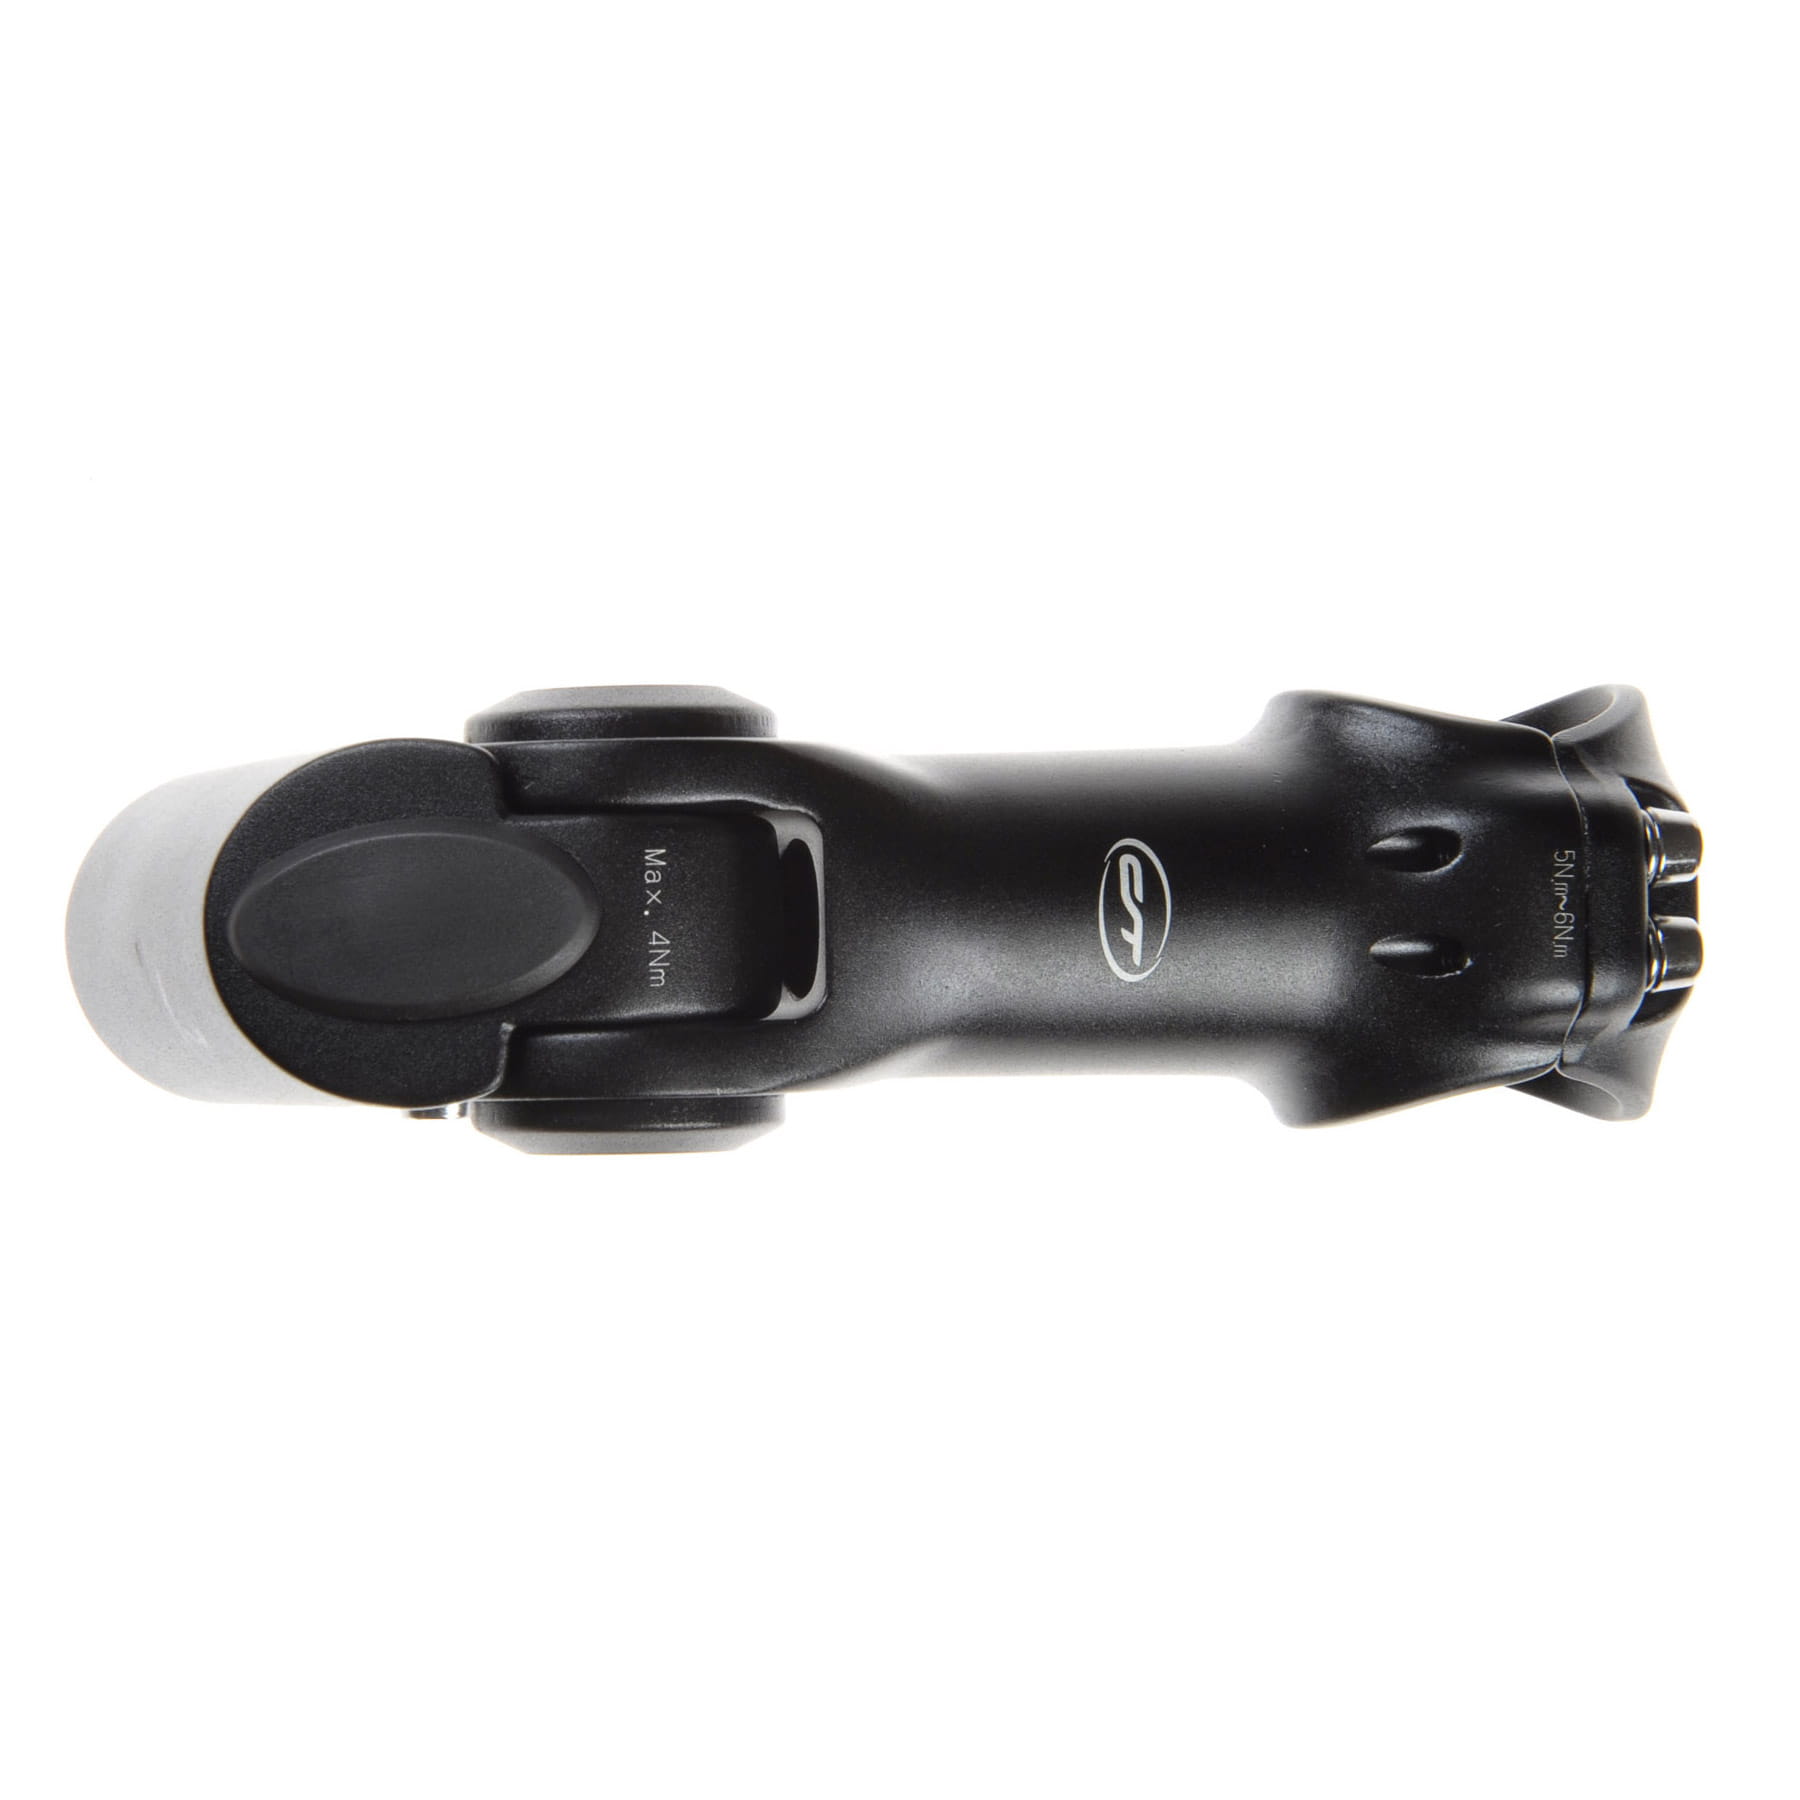 Contec Tarantula Hybrid Ahead Alu Stem adjustable Black 31,8 x 110mm